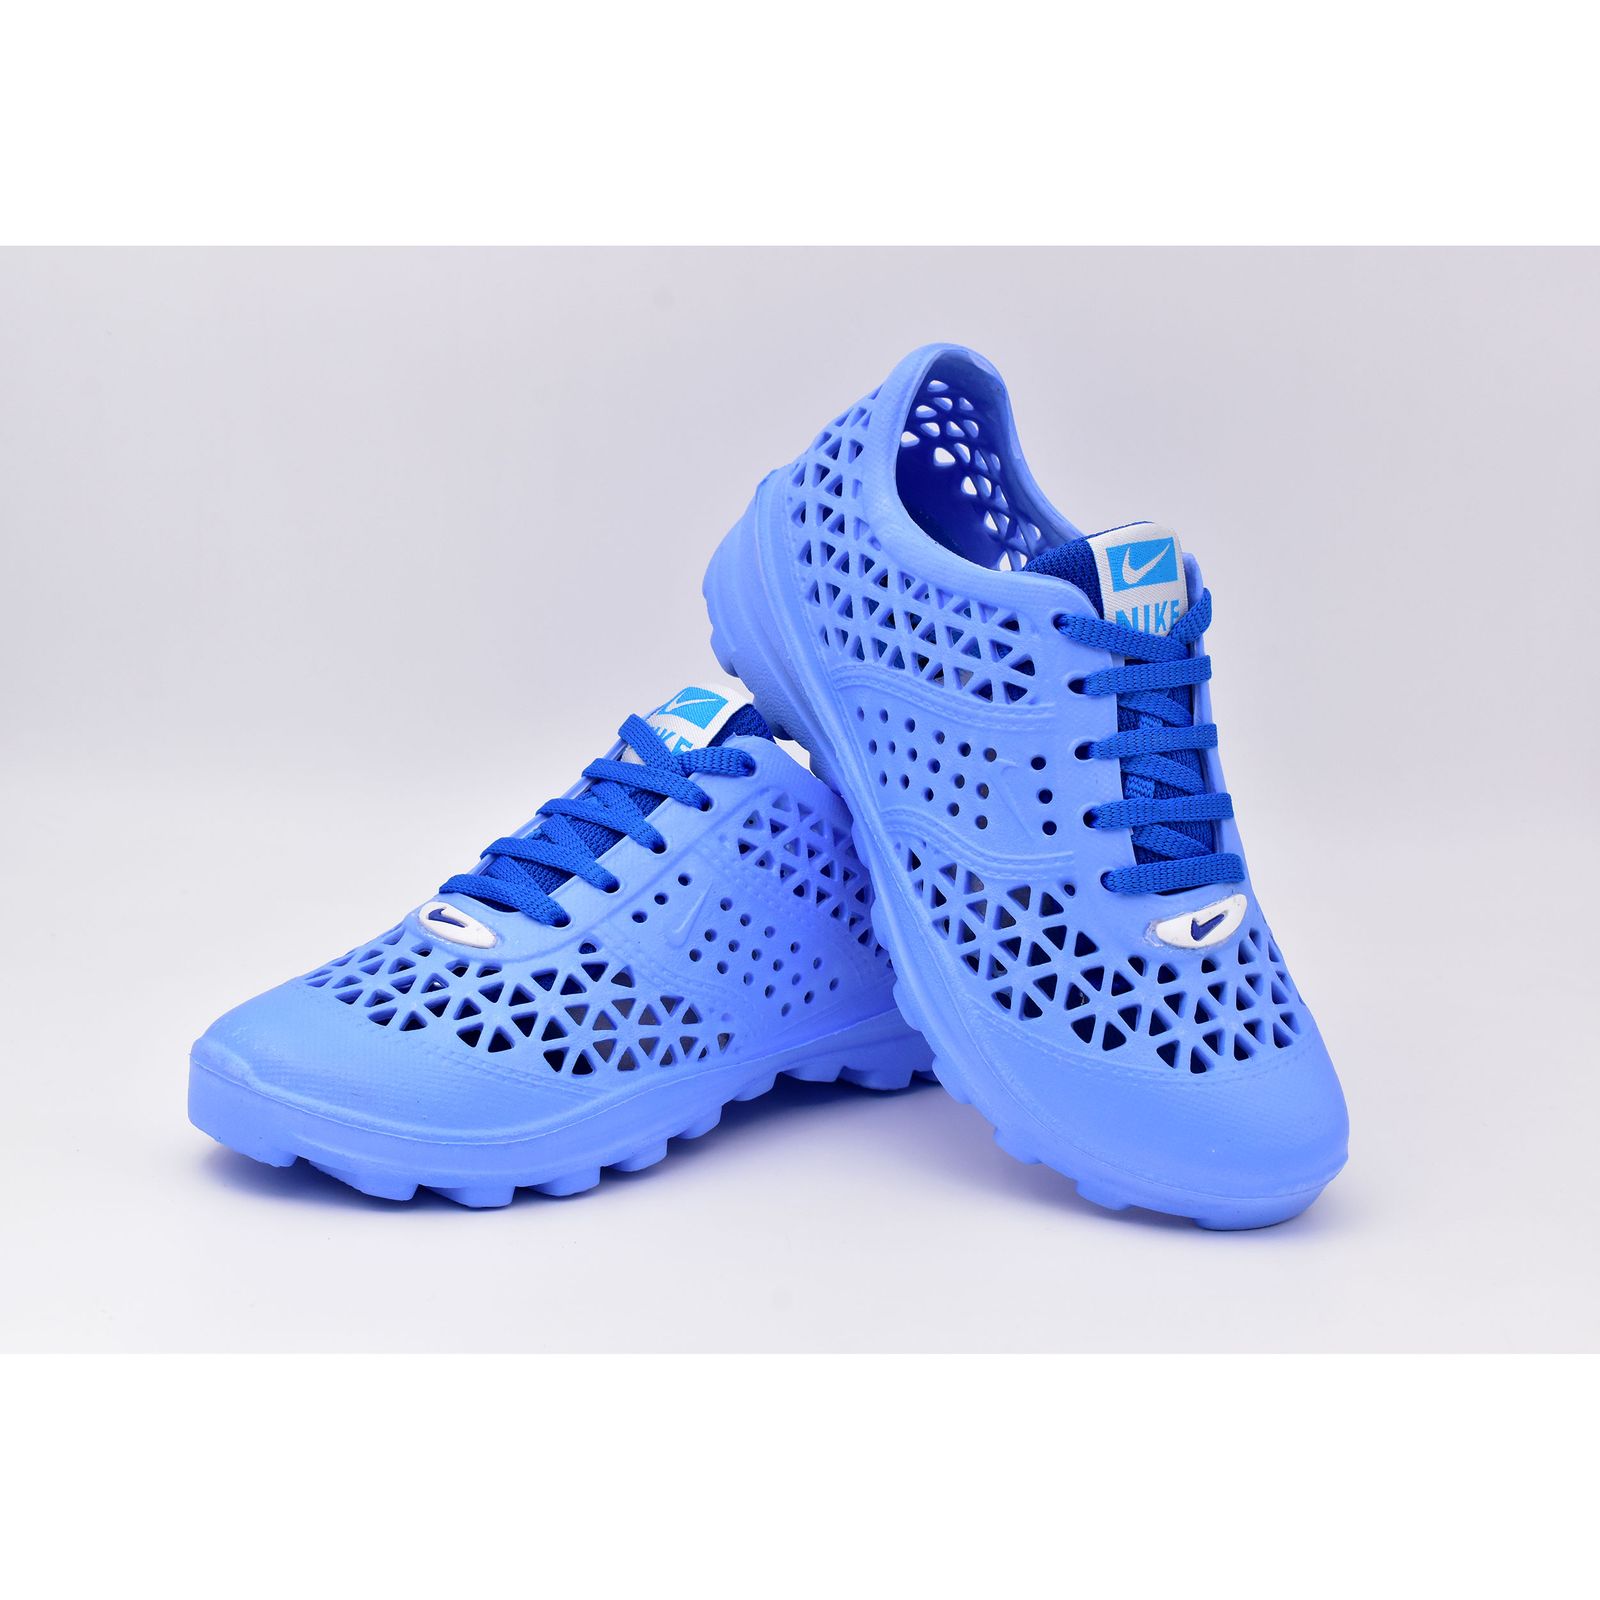  کفش ورزش های آبی زنانه نسیم مدل مرجان کد 8713 -  - 6